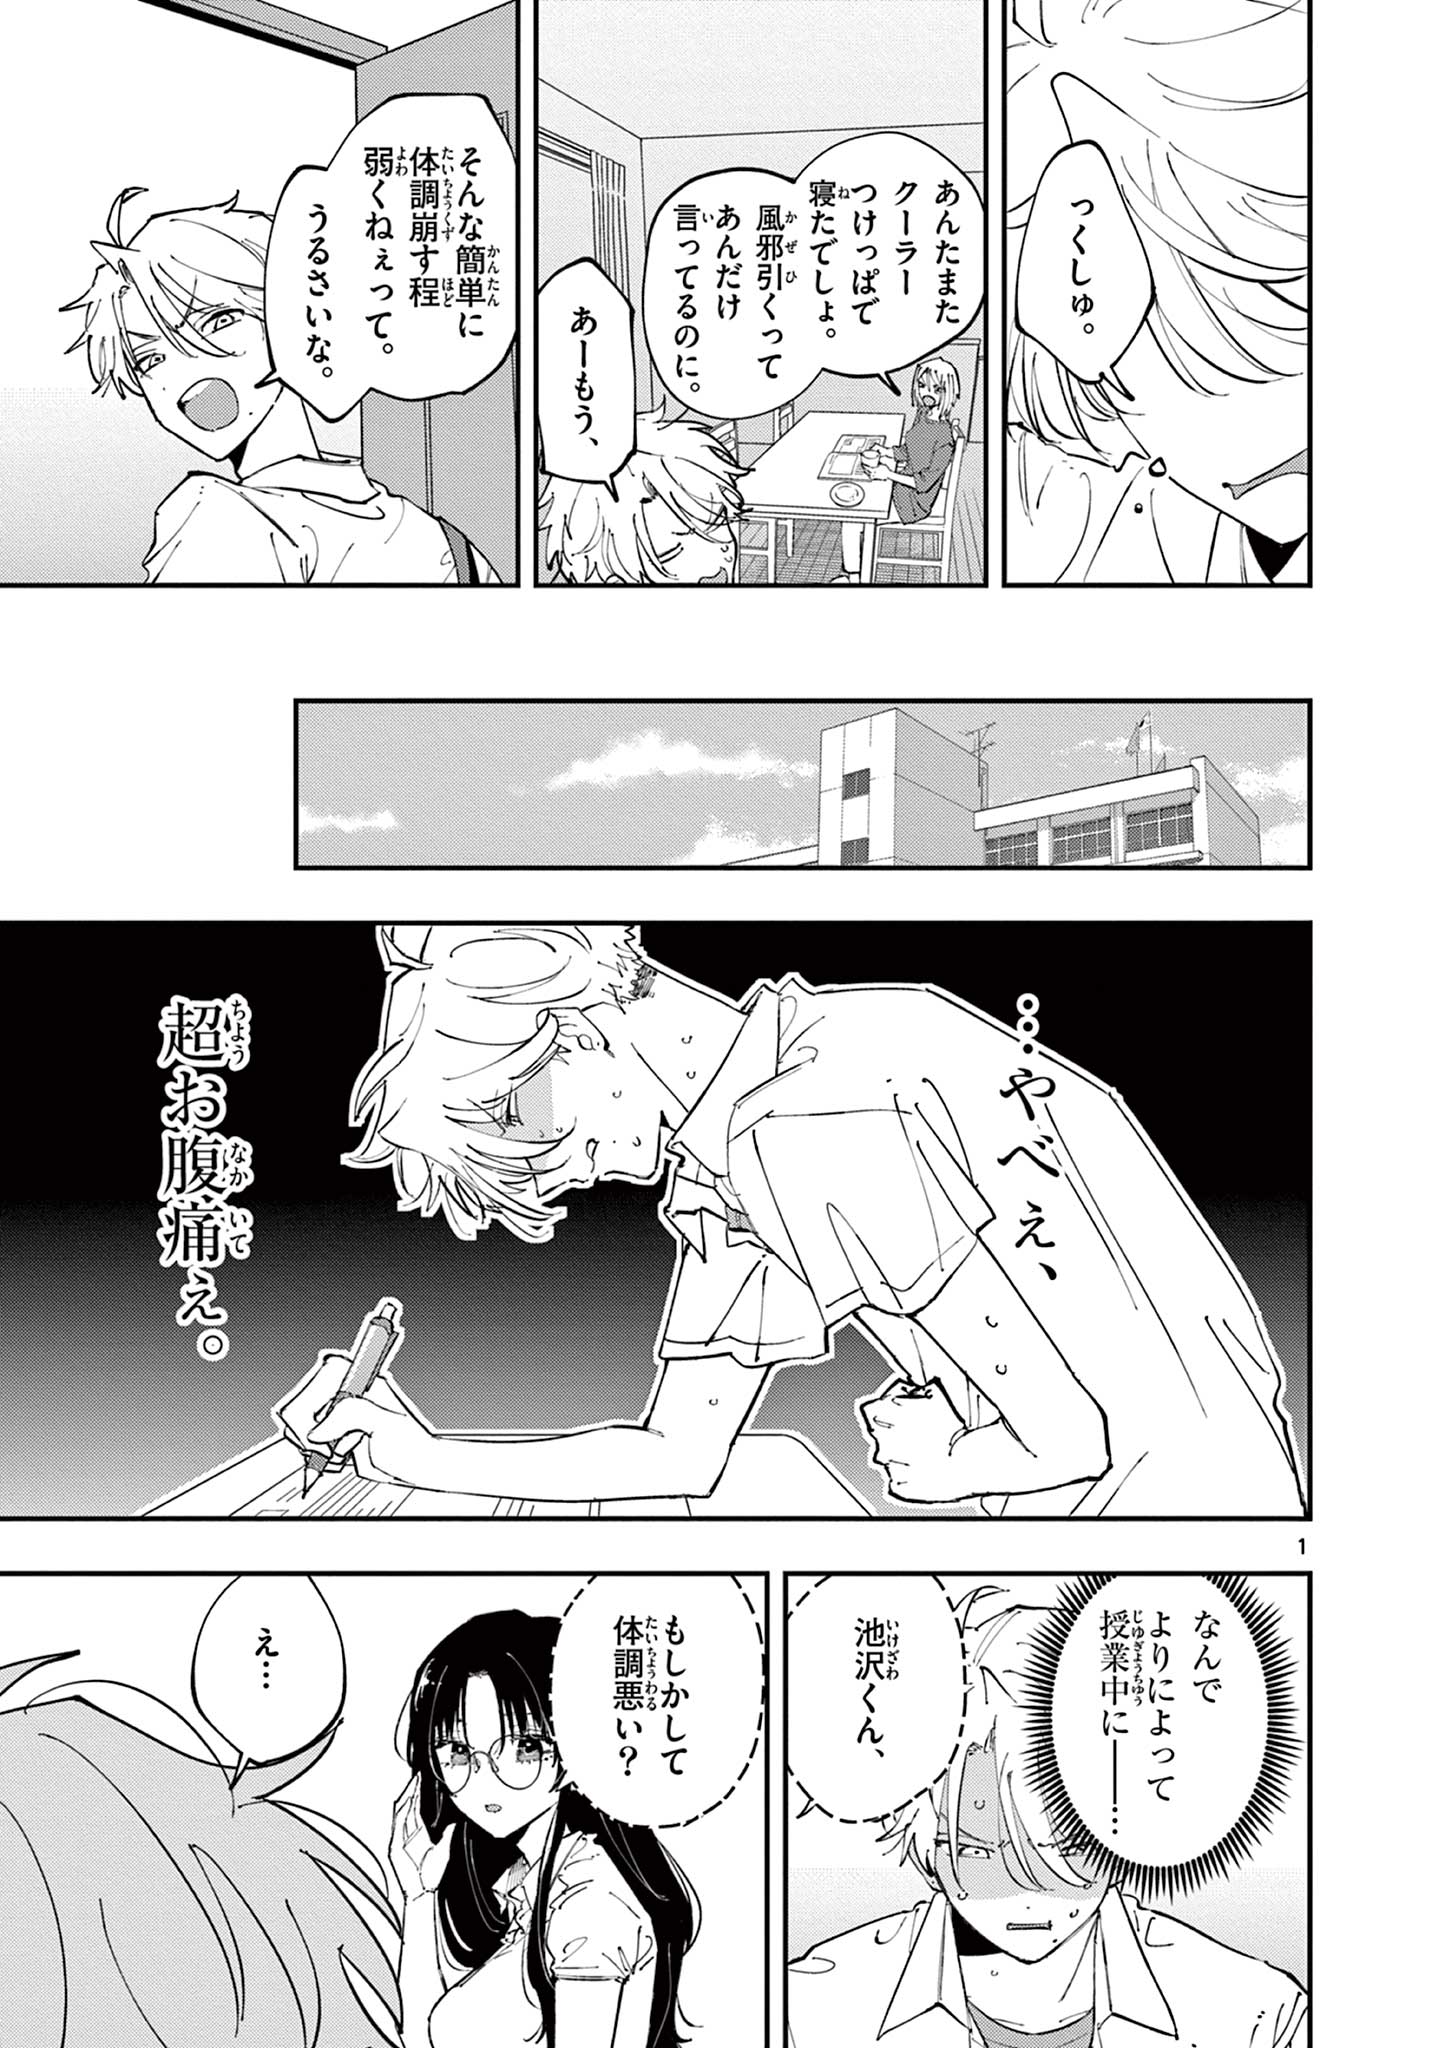 Tonari no Seki no Yatsu ga Eroi me de Mitekuru Hanashi - Chapter 10 - Page 1